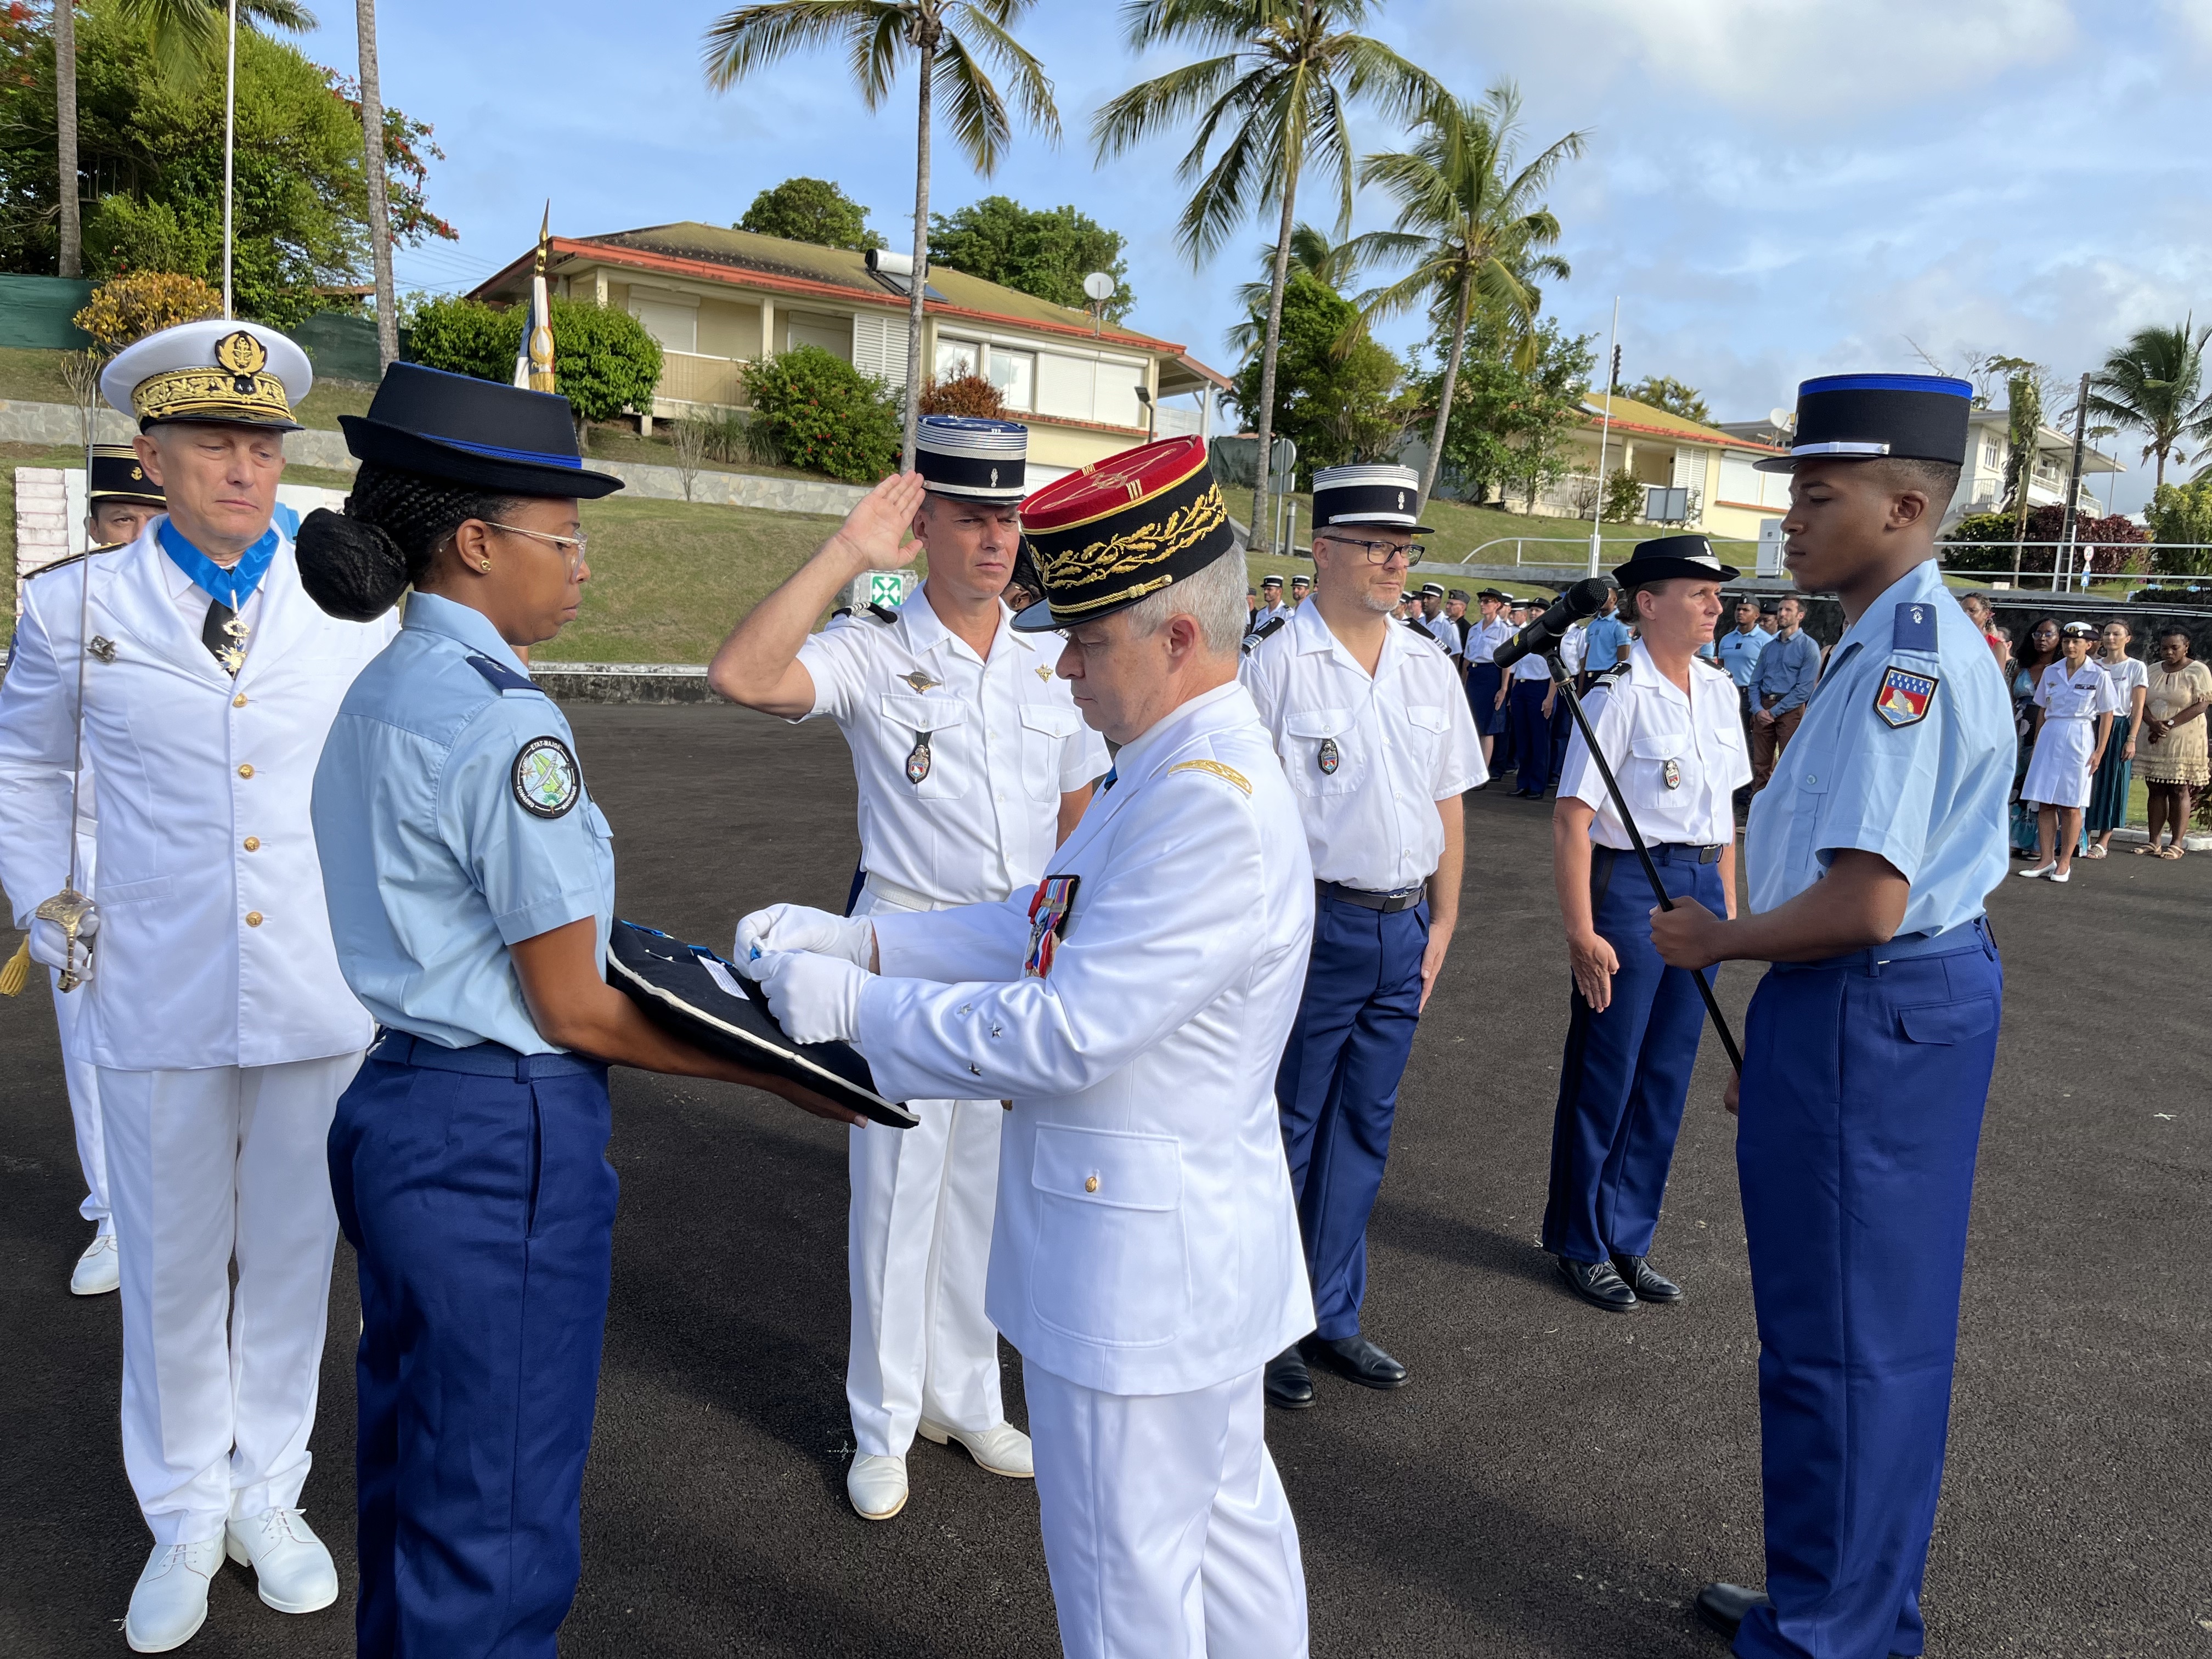     La médaille d’Or de la défense nationale décernée à la gendarmerie de Martinique 

